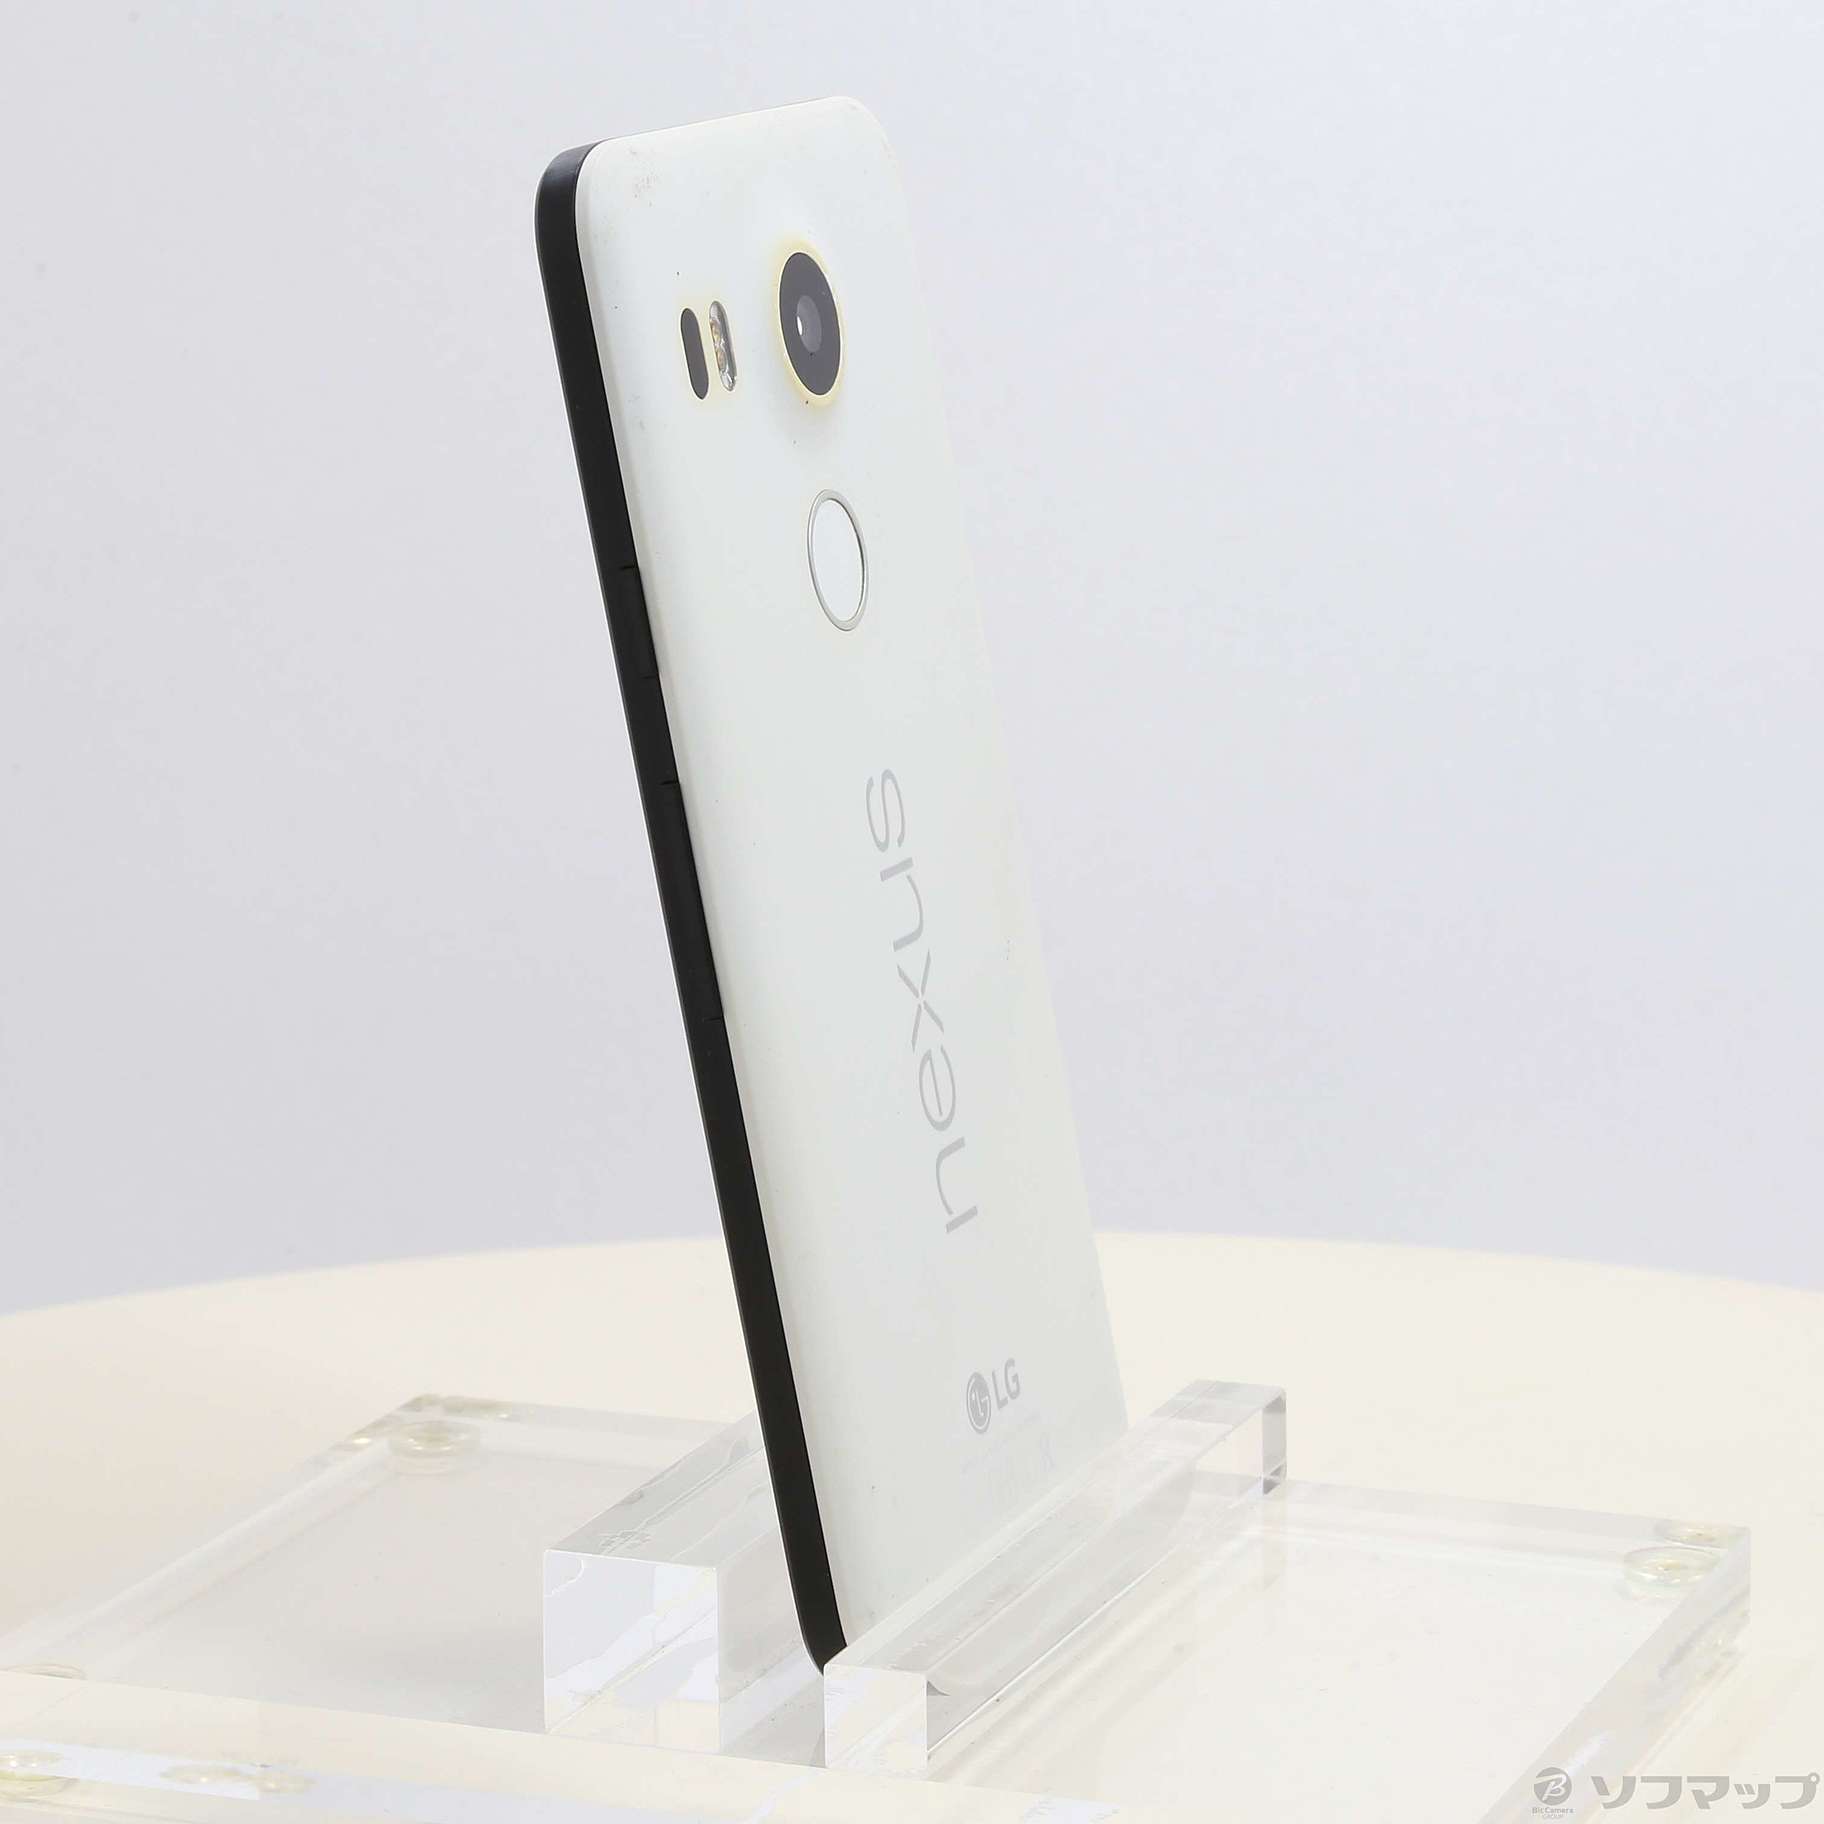 Nexus5X 32GB クォーツ LG-H791 SIMフリー